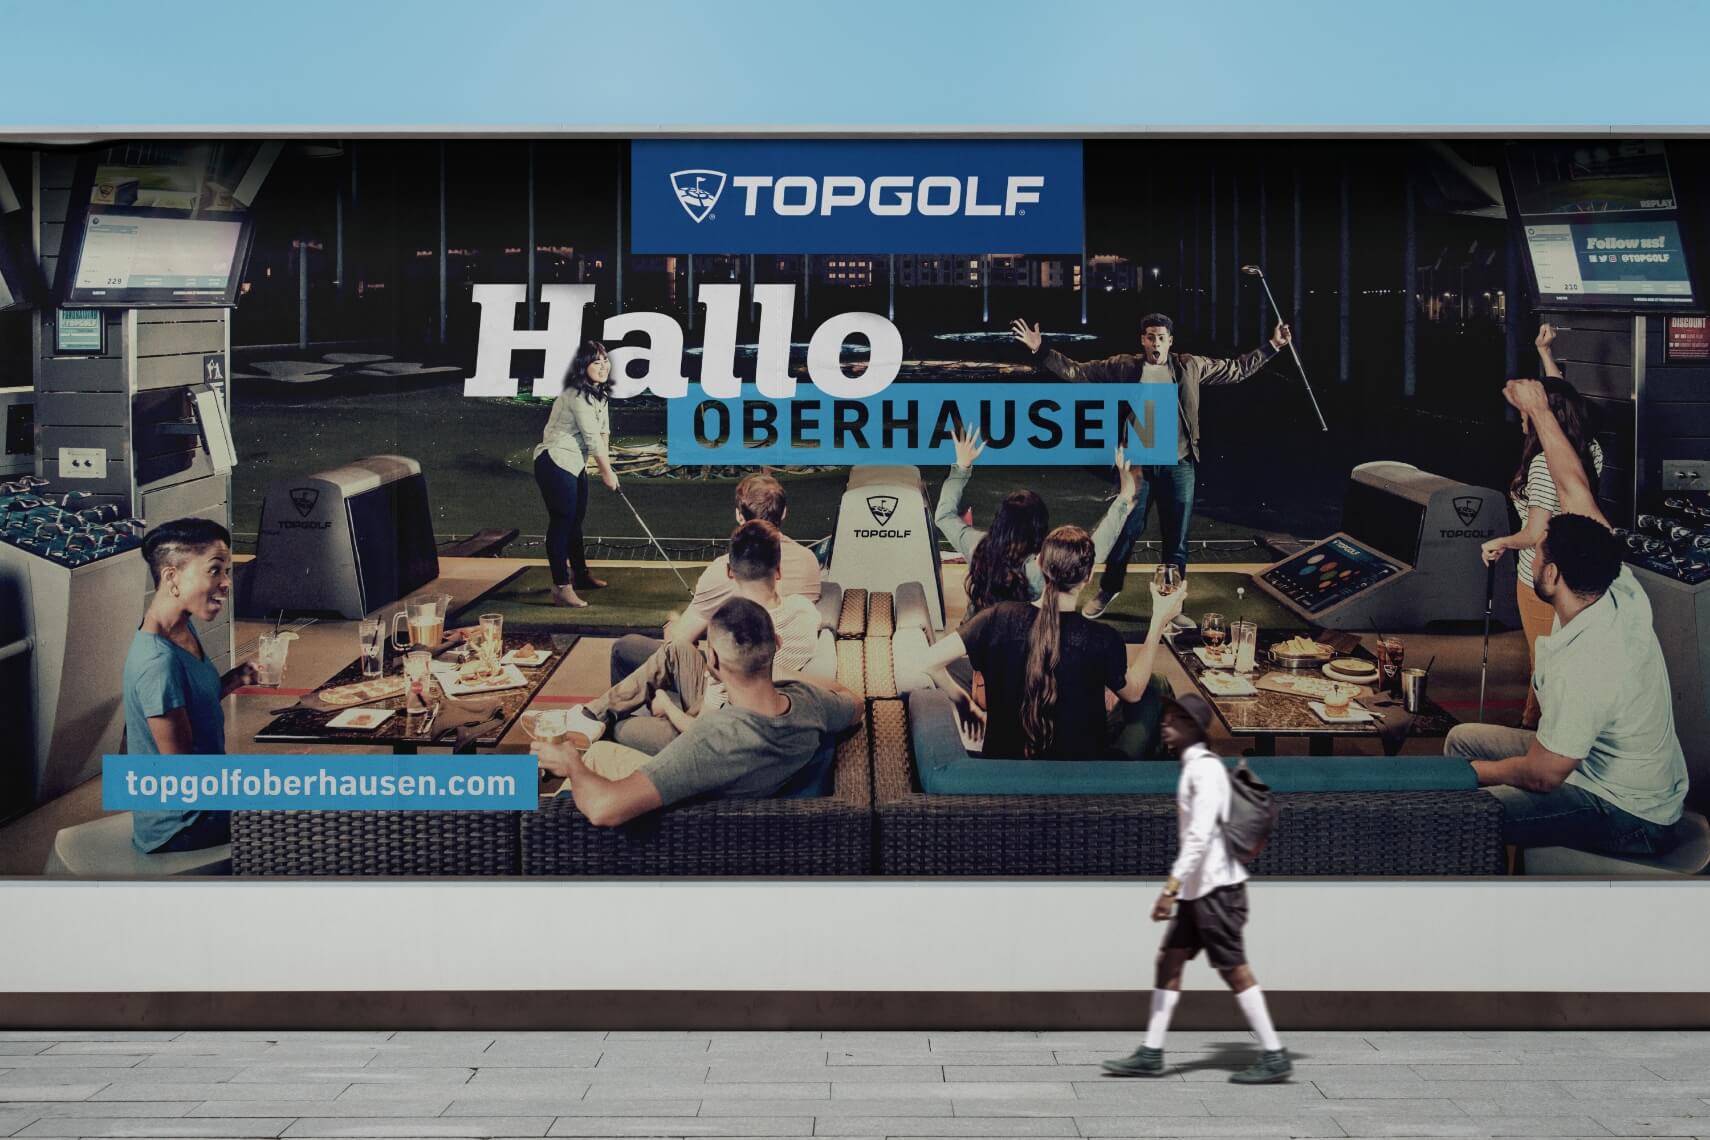 Topgolf Street Billboard